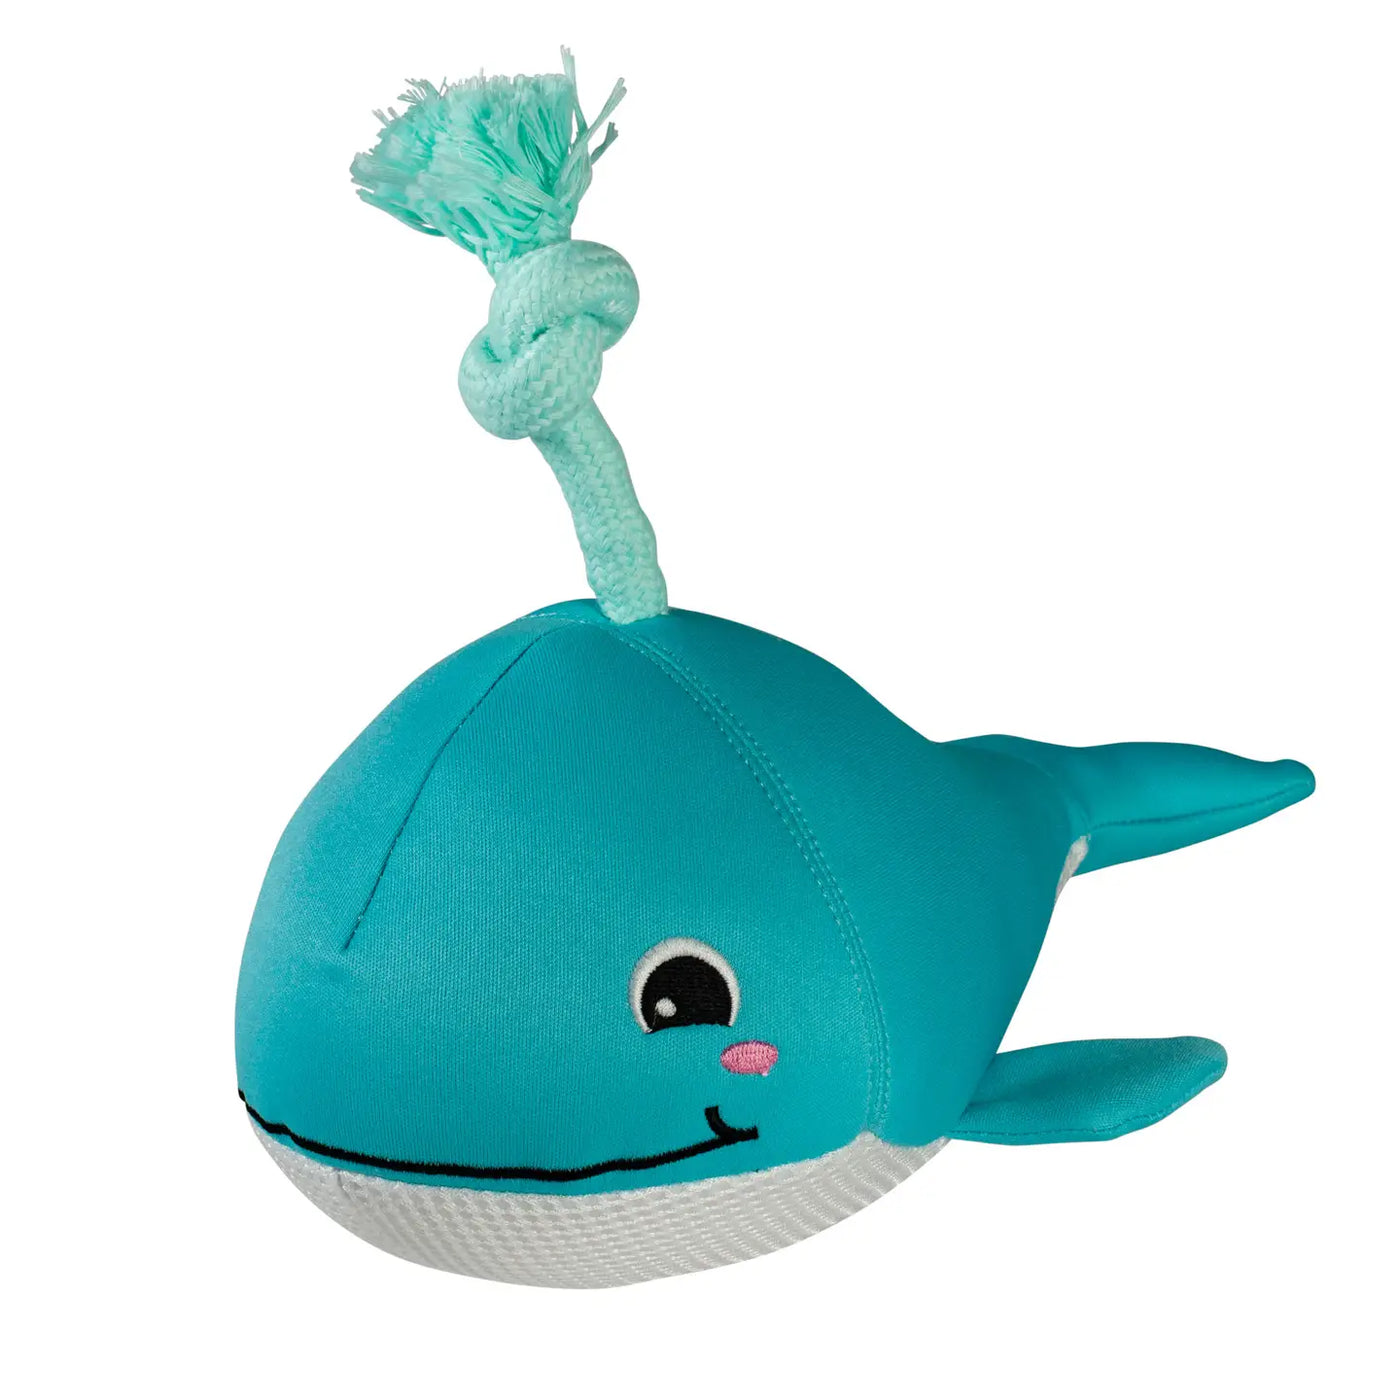 Fringe Floating Toy - Splashy Whale